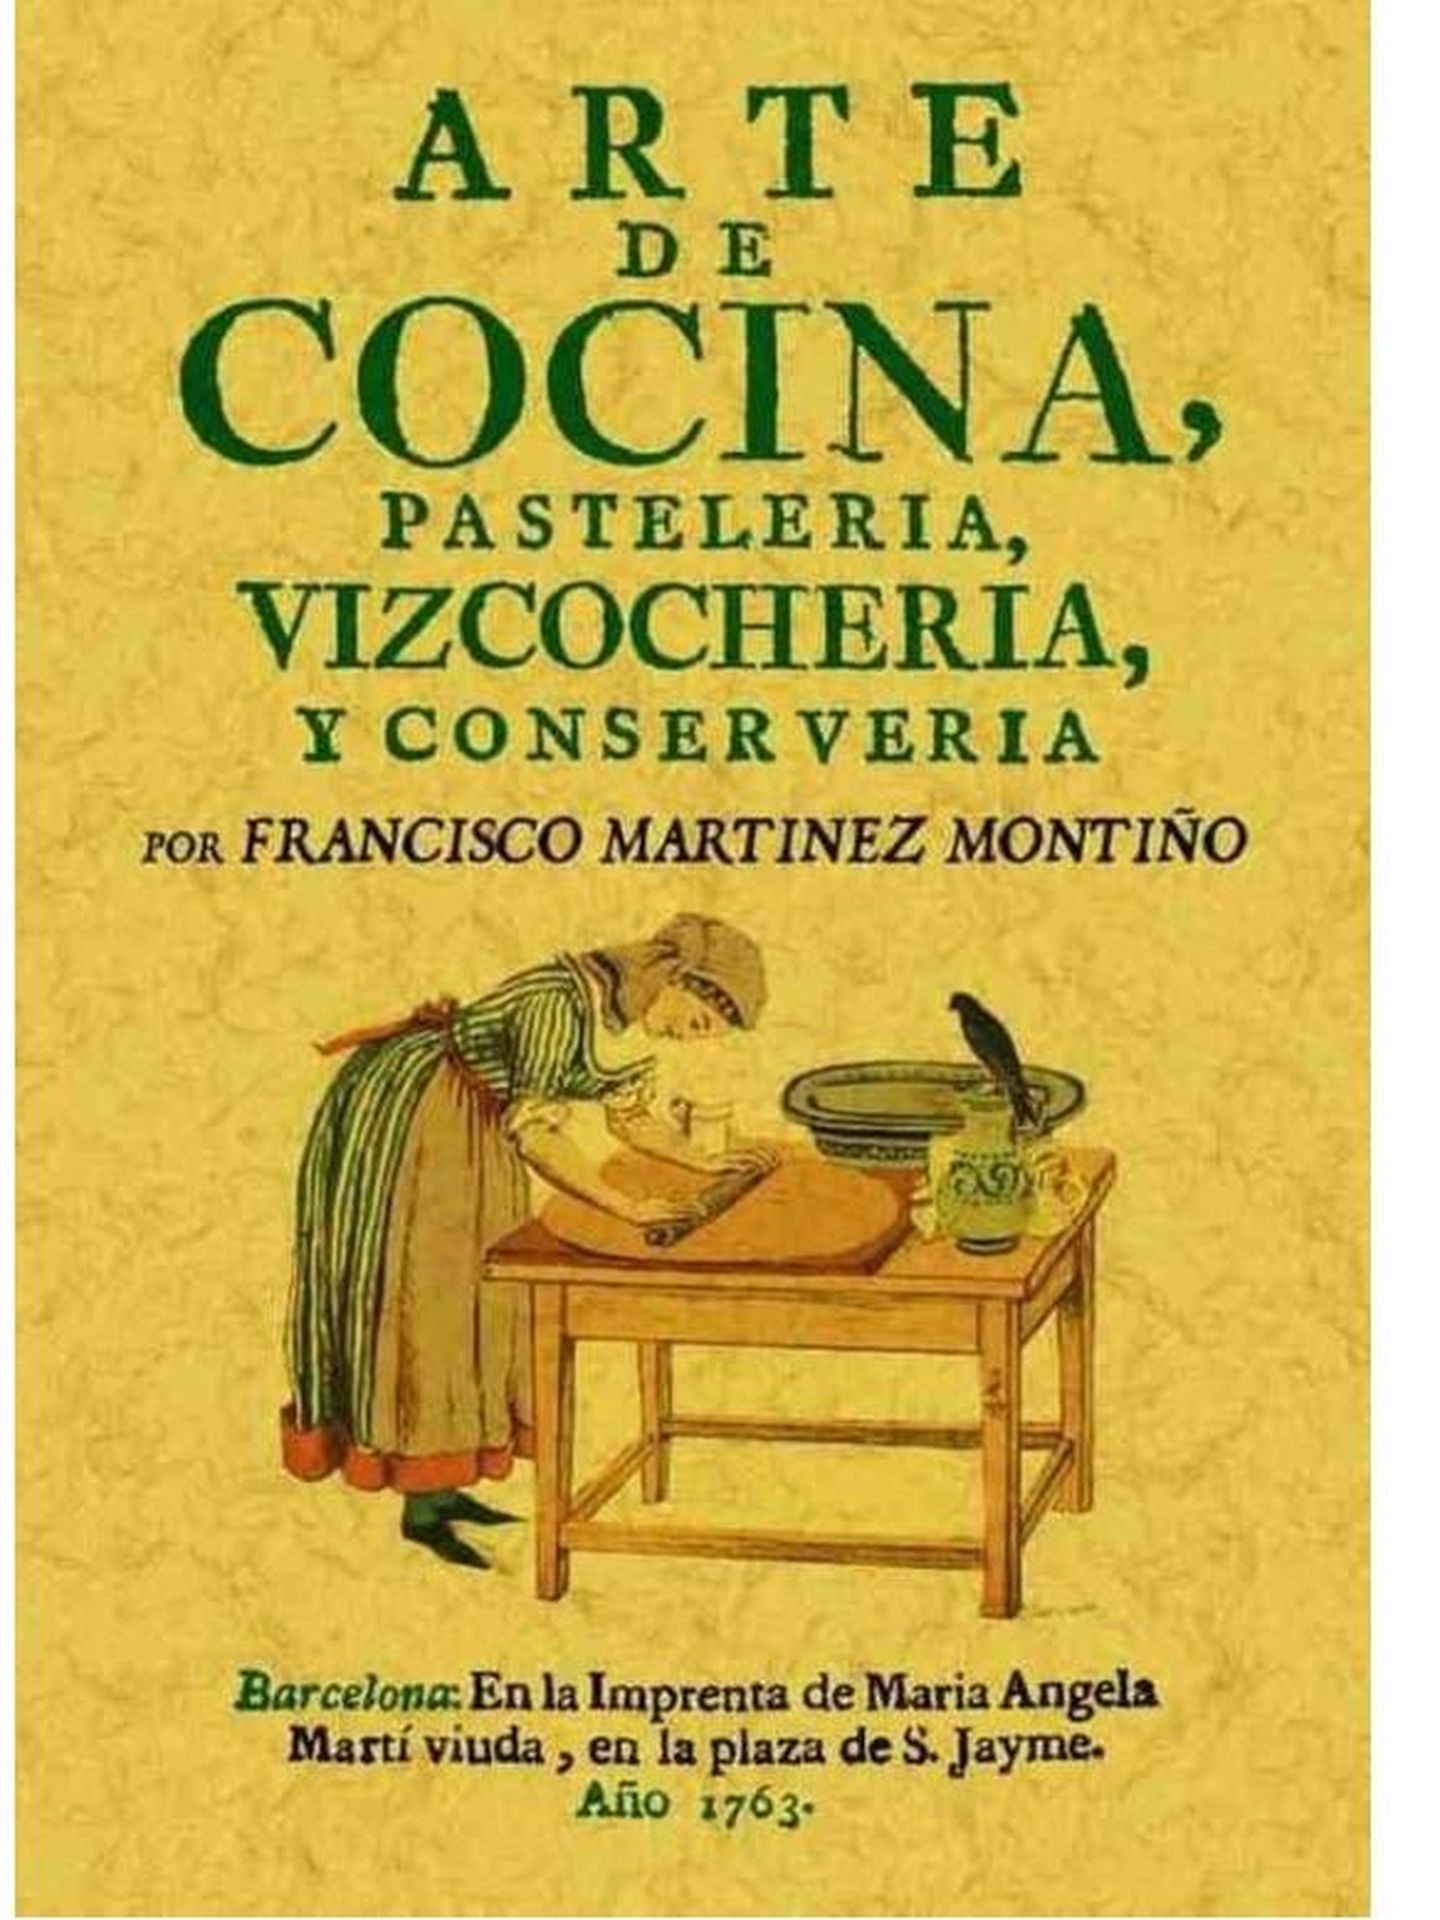 Portada de 'Arte de cocina, pastelería, bizcochería y conservería', de Francisco Martínez Motiño.